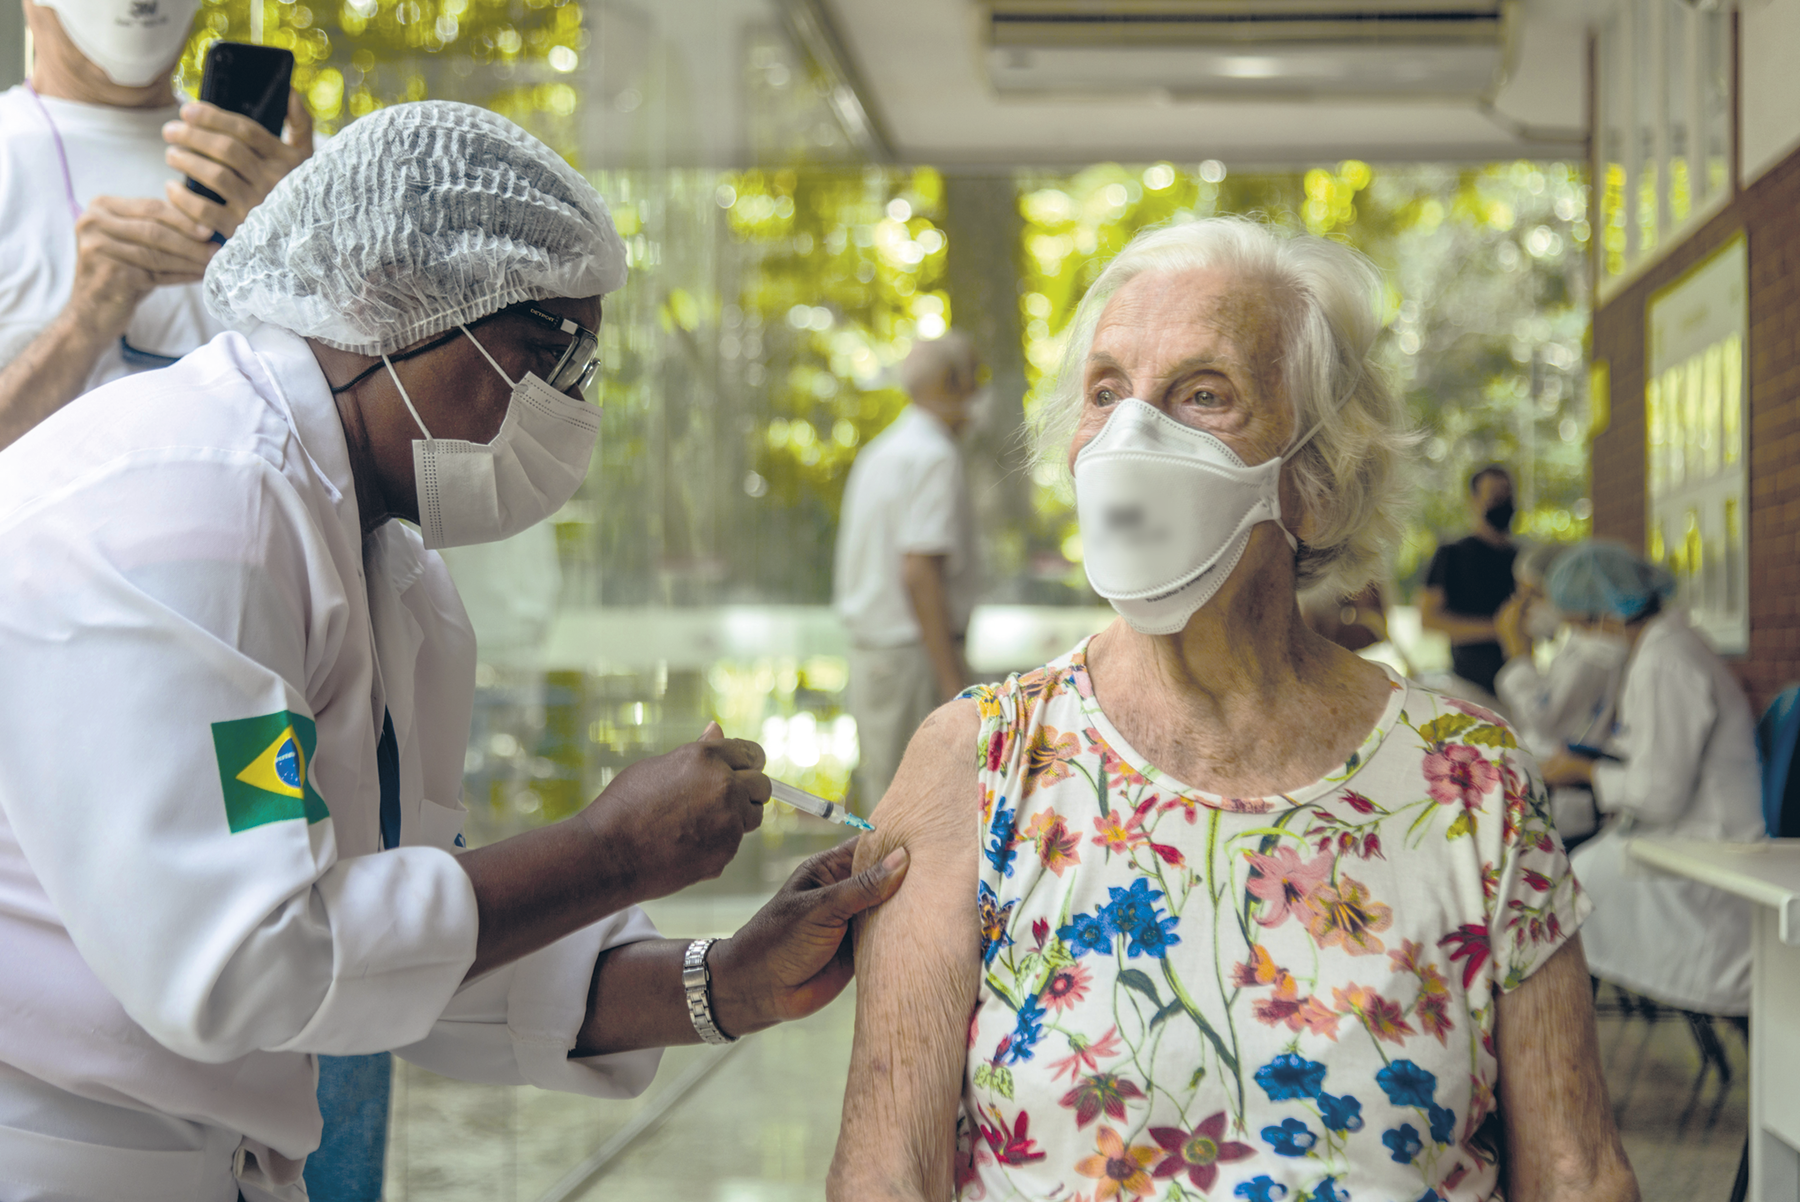 Fotografia. Destaque para uma idosa sendo vacinada. A mulher que aplica a vacina em seu braço usa touca, máscara e avental. A senhora também usa máscara. Ao fundo há mais pessoas.